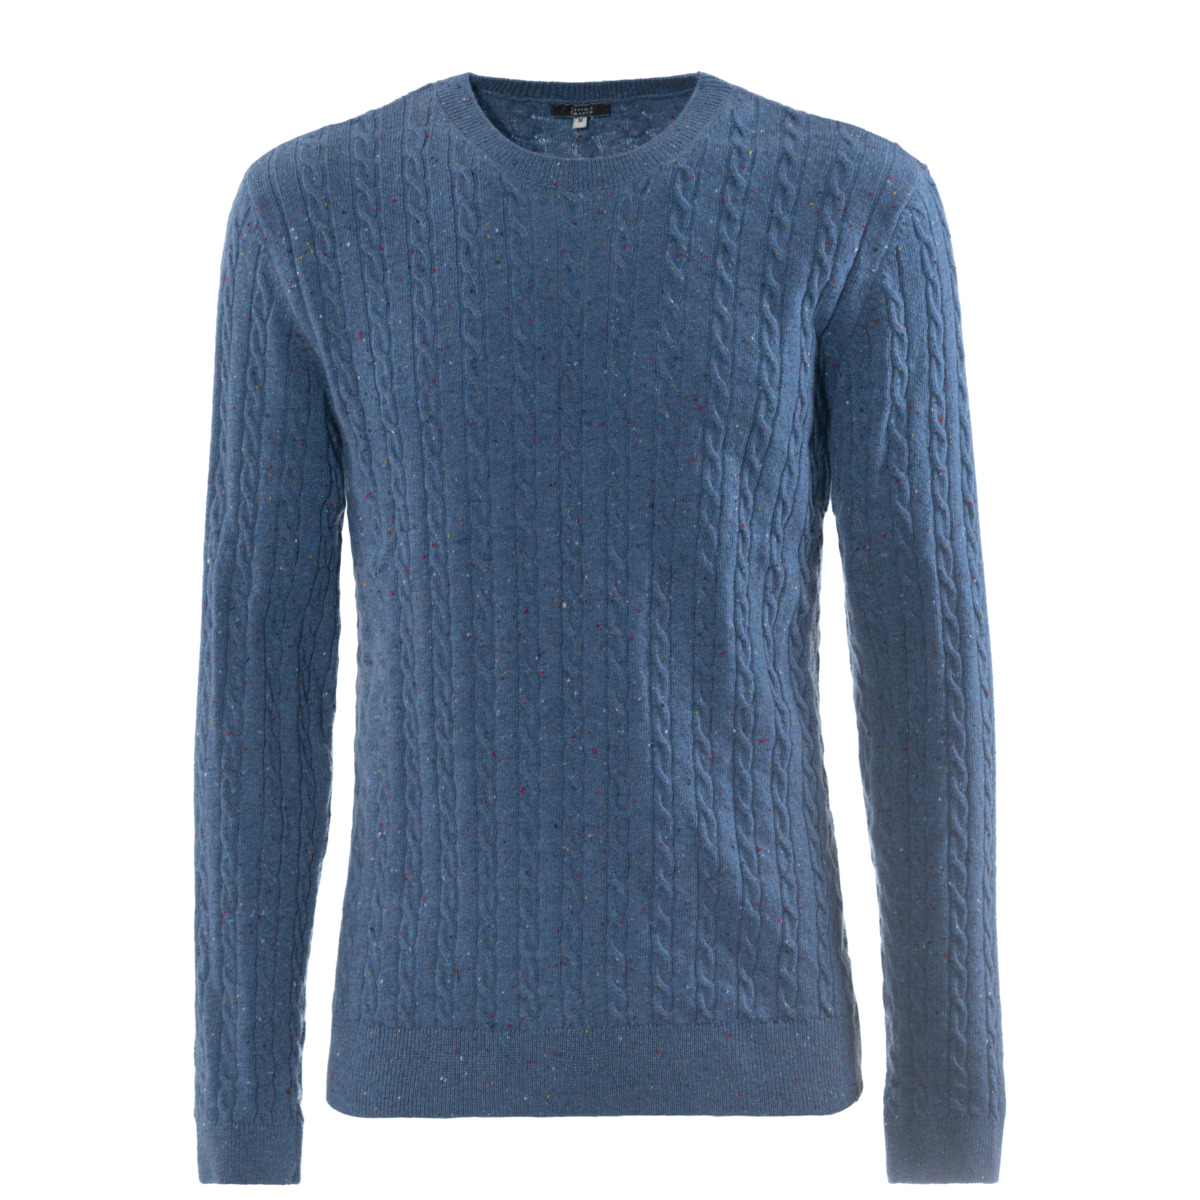 Blue Sweater, NICOLAS